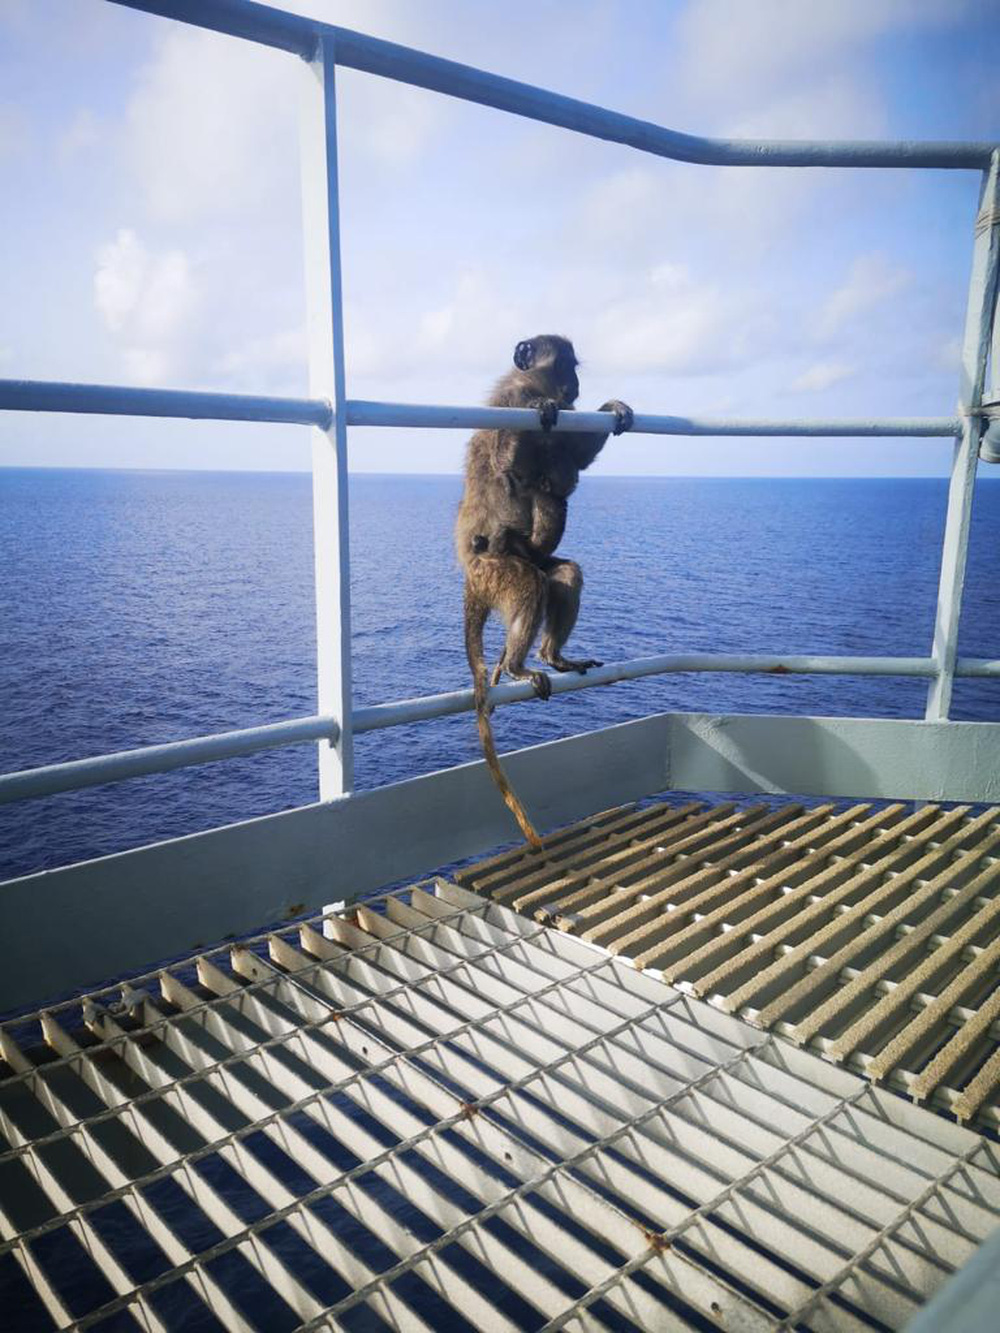 Phát hiện 2 con khỉ trên tàu, thủy thủ định giăng lưới rồi câm nín với phản ứng của khỉ mẹ - Ảnh 6.